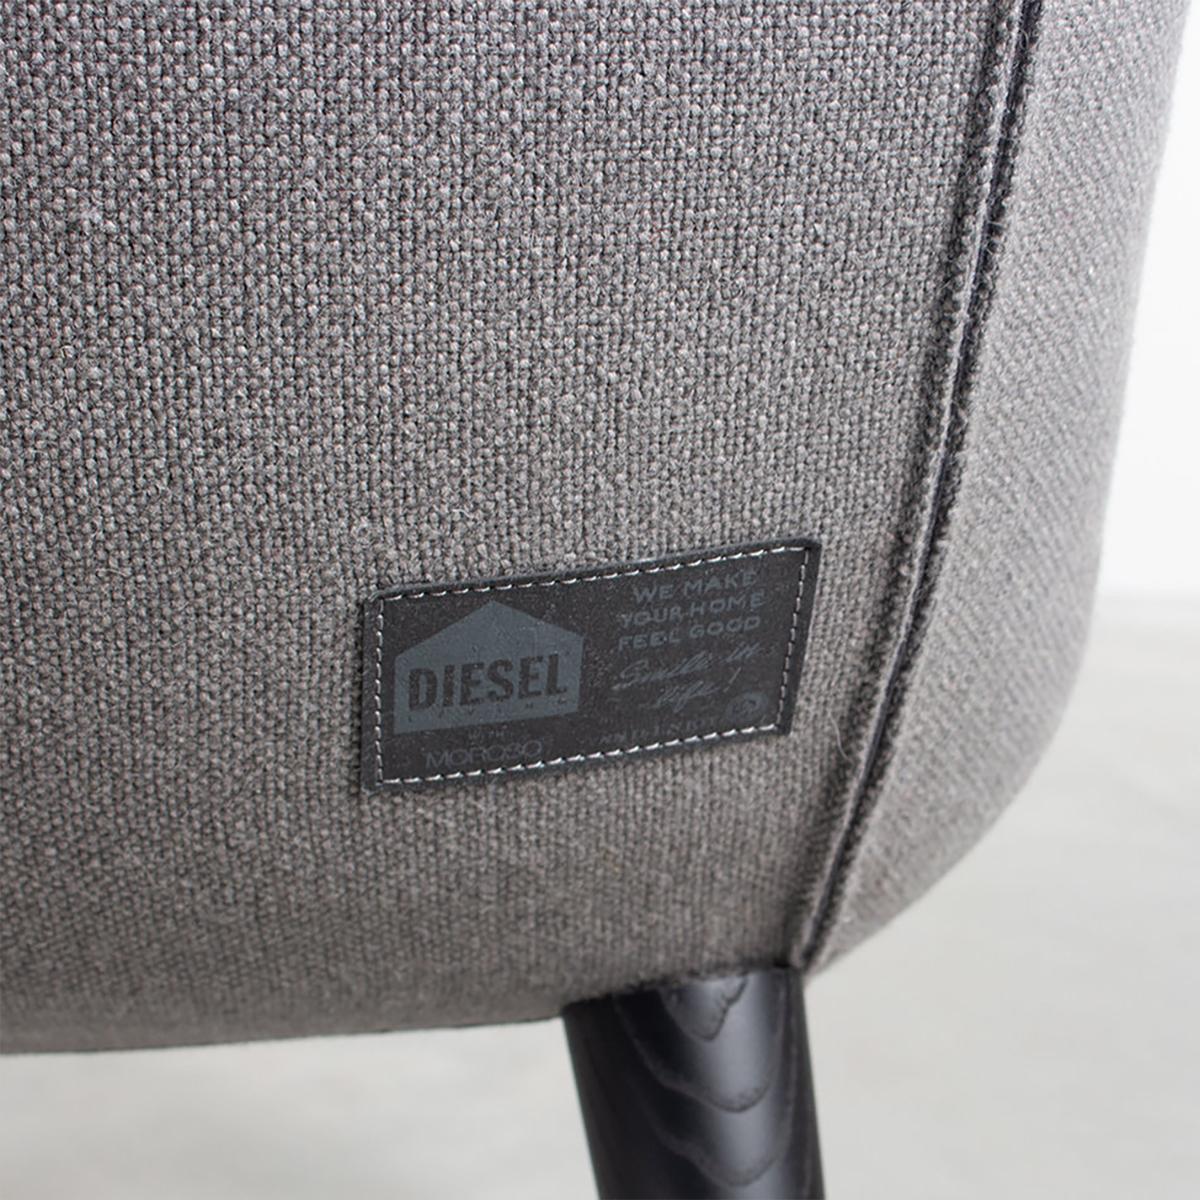 Diesel Longwave Wingback Armchair in Grey Wool by Moroso, Italy 1